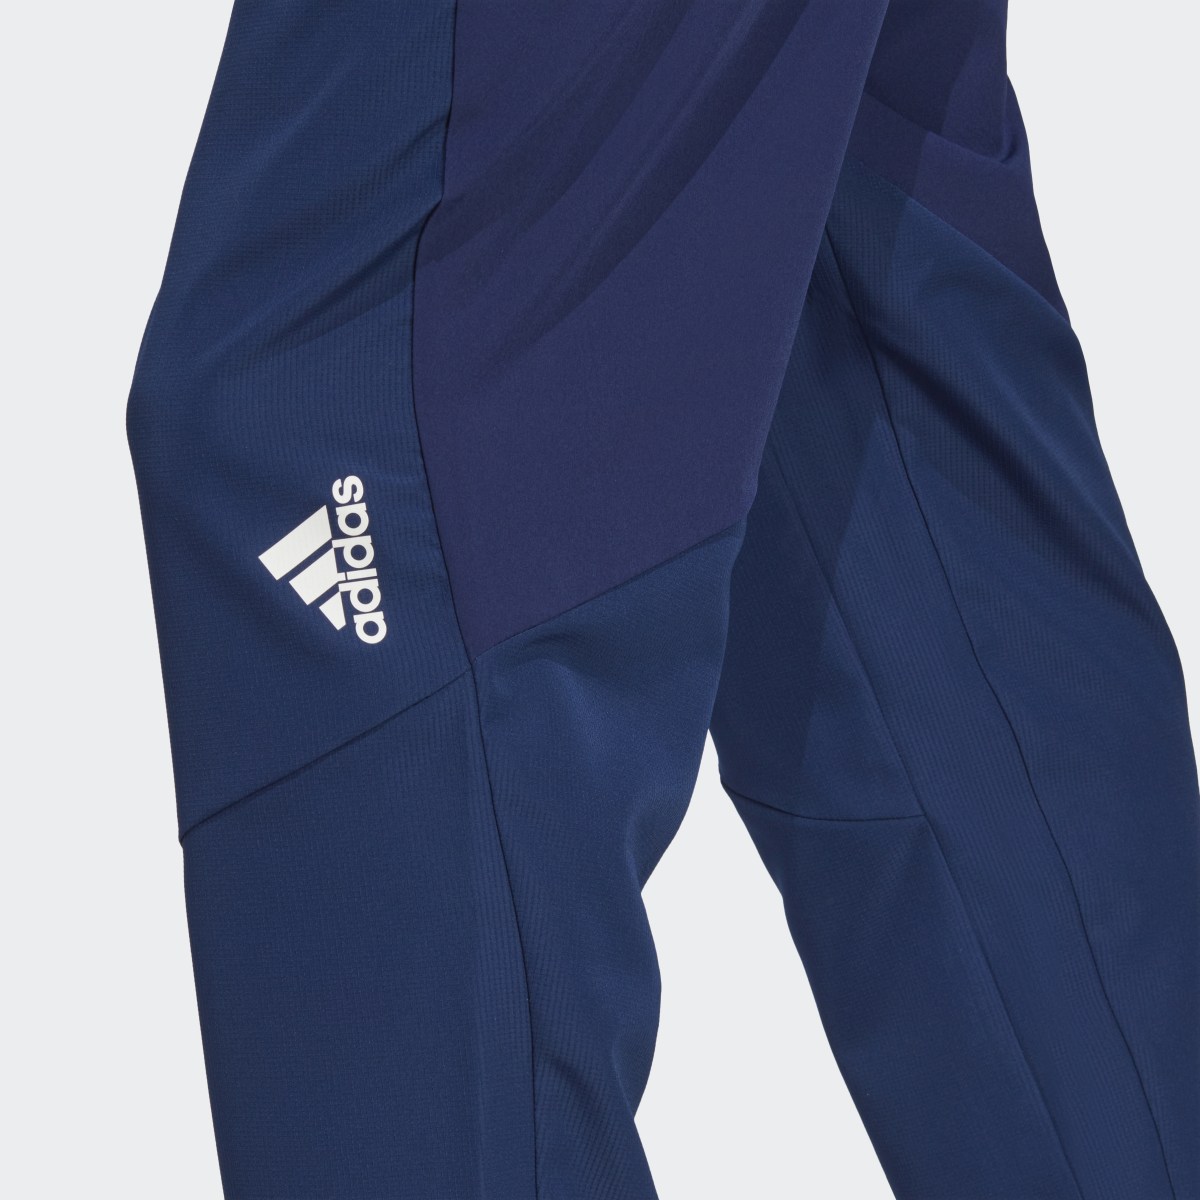 Adidas Pantaloni da allenamento AEROREADY Designed for Movement. 6